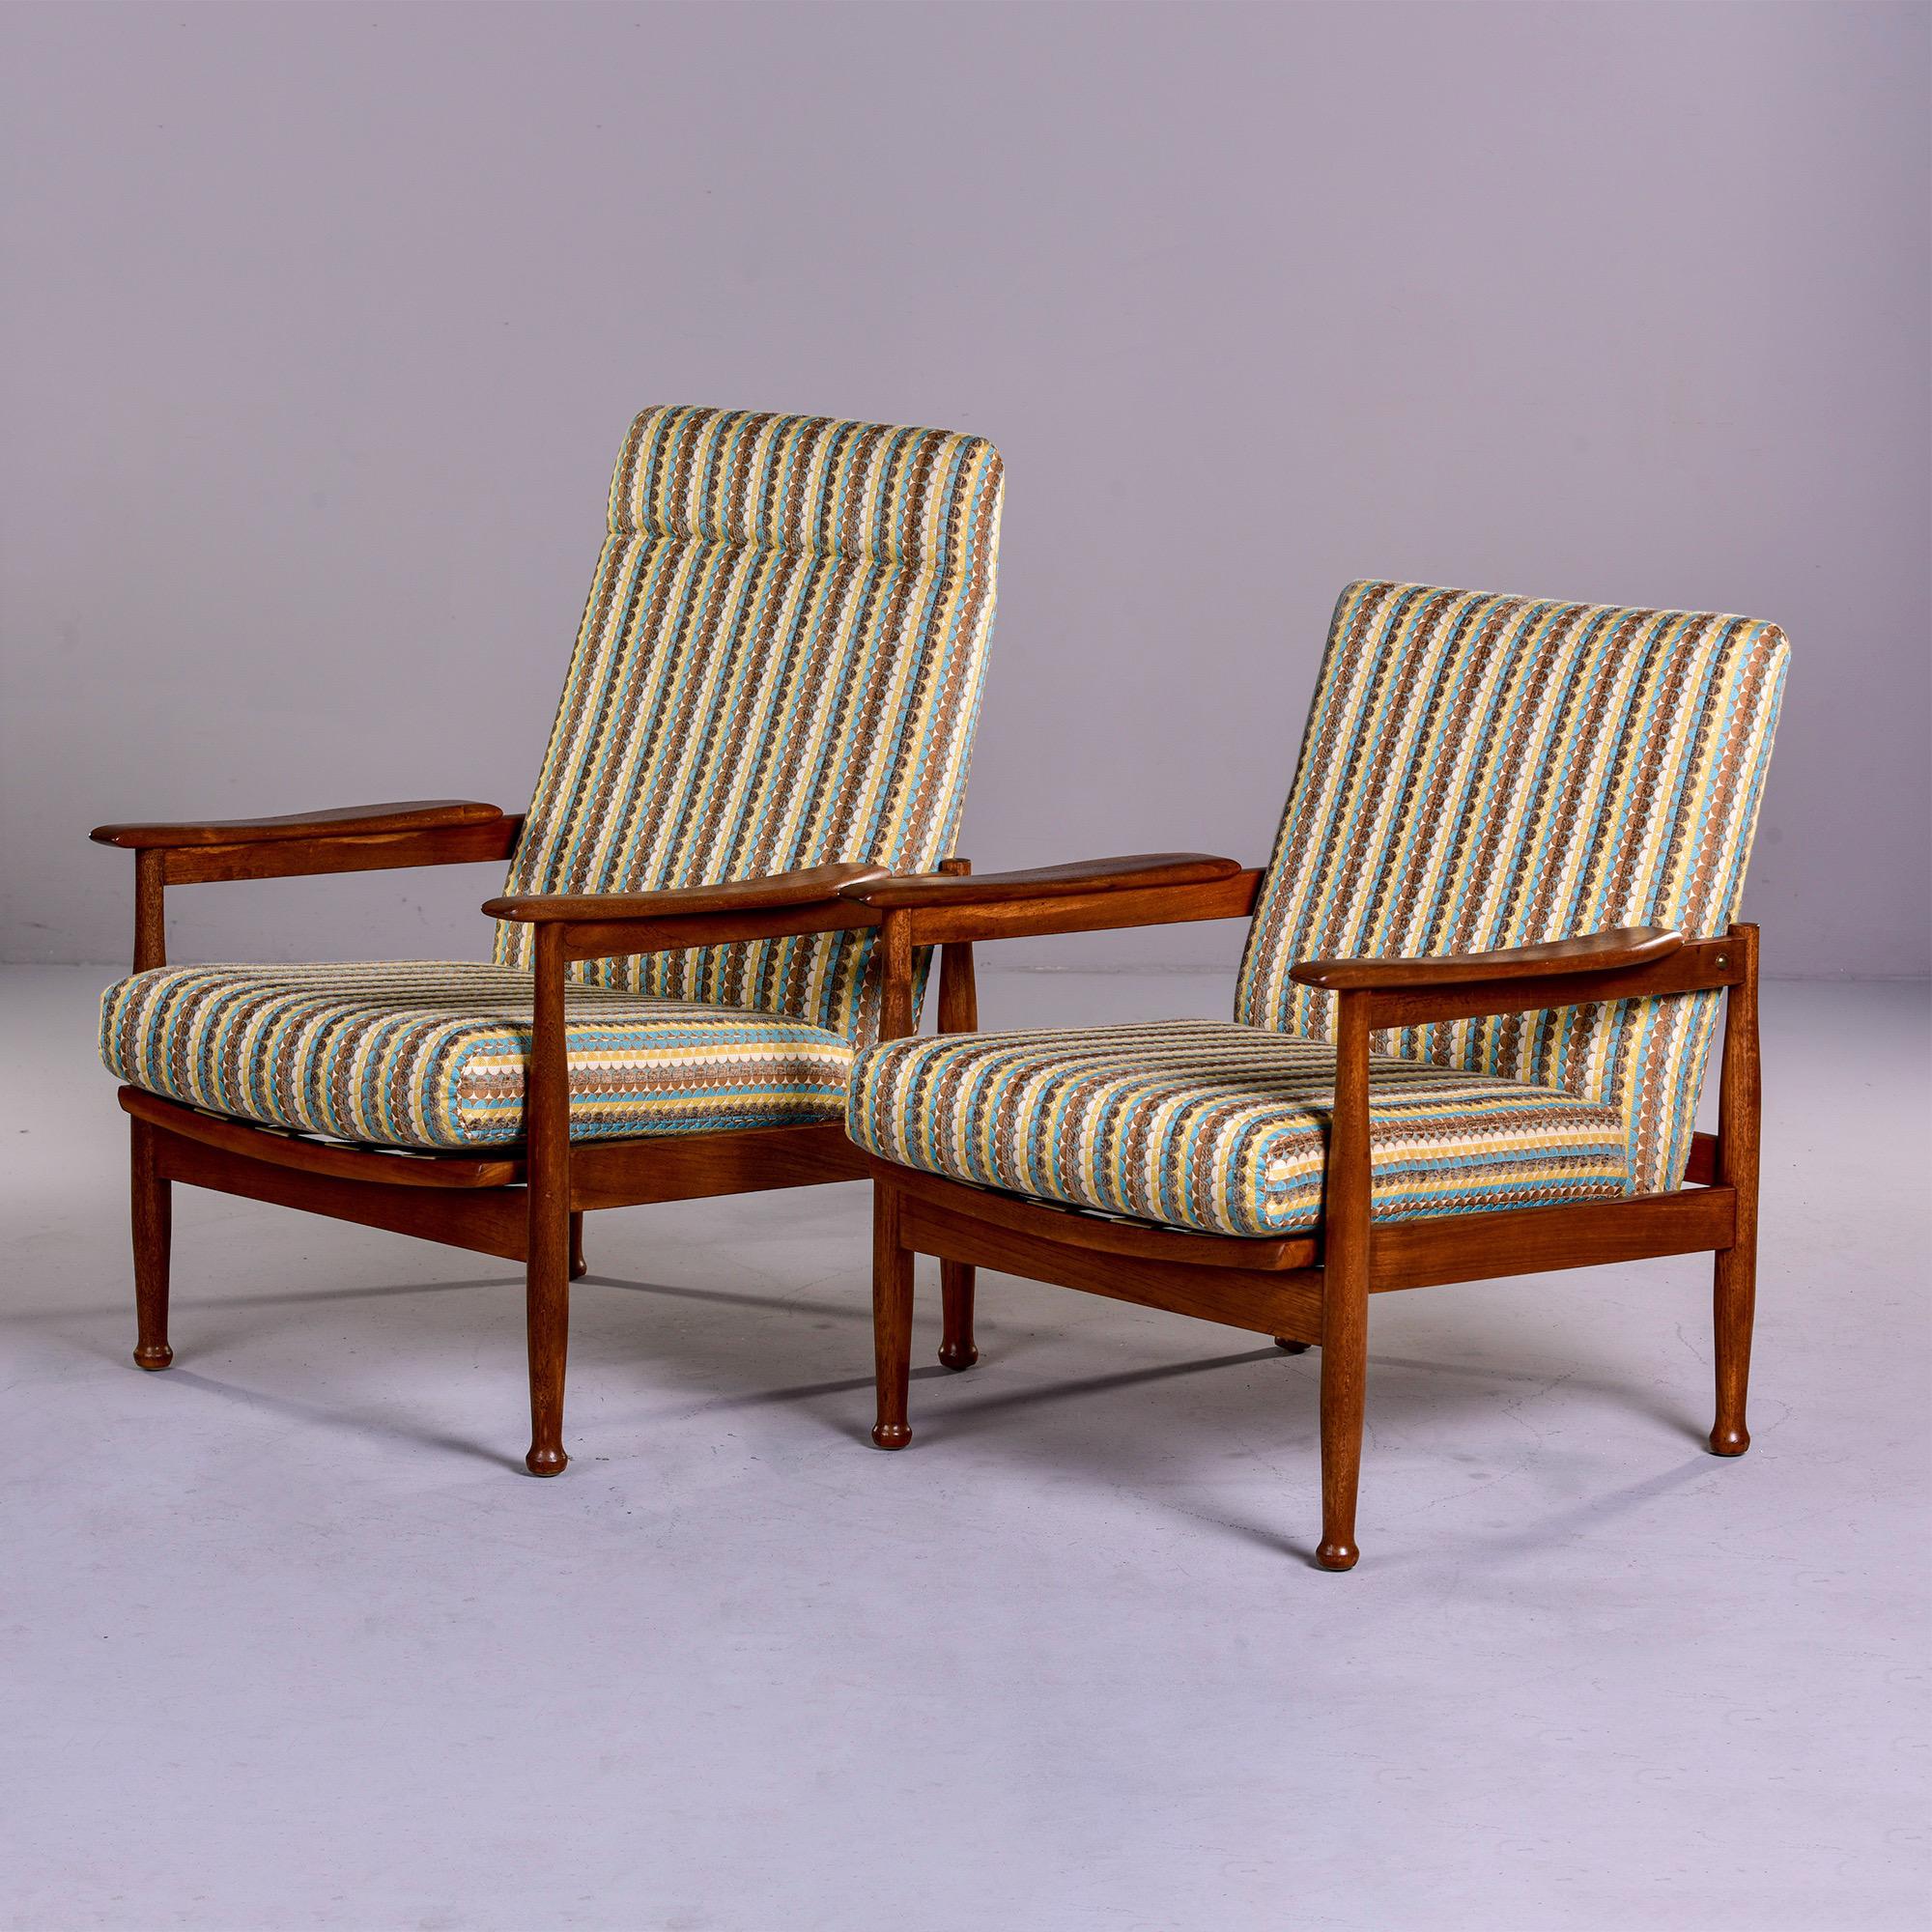 Près d'une paire de chaises scandinaves inclinables en orme du milieu du siècle dernier

Cette paire de fauteuils inclinables scandinaves en bois d'orme datant du milieu du siècle dernier date de 1970. Parfois appelées 